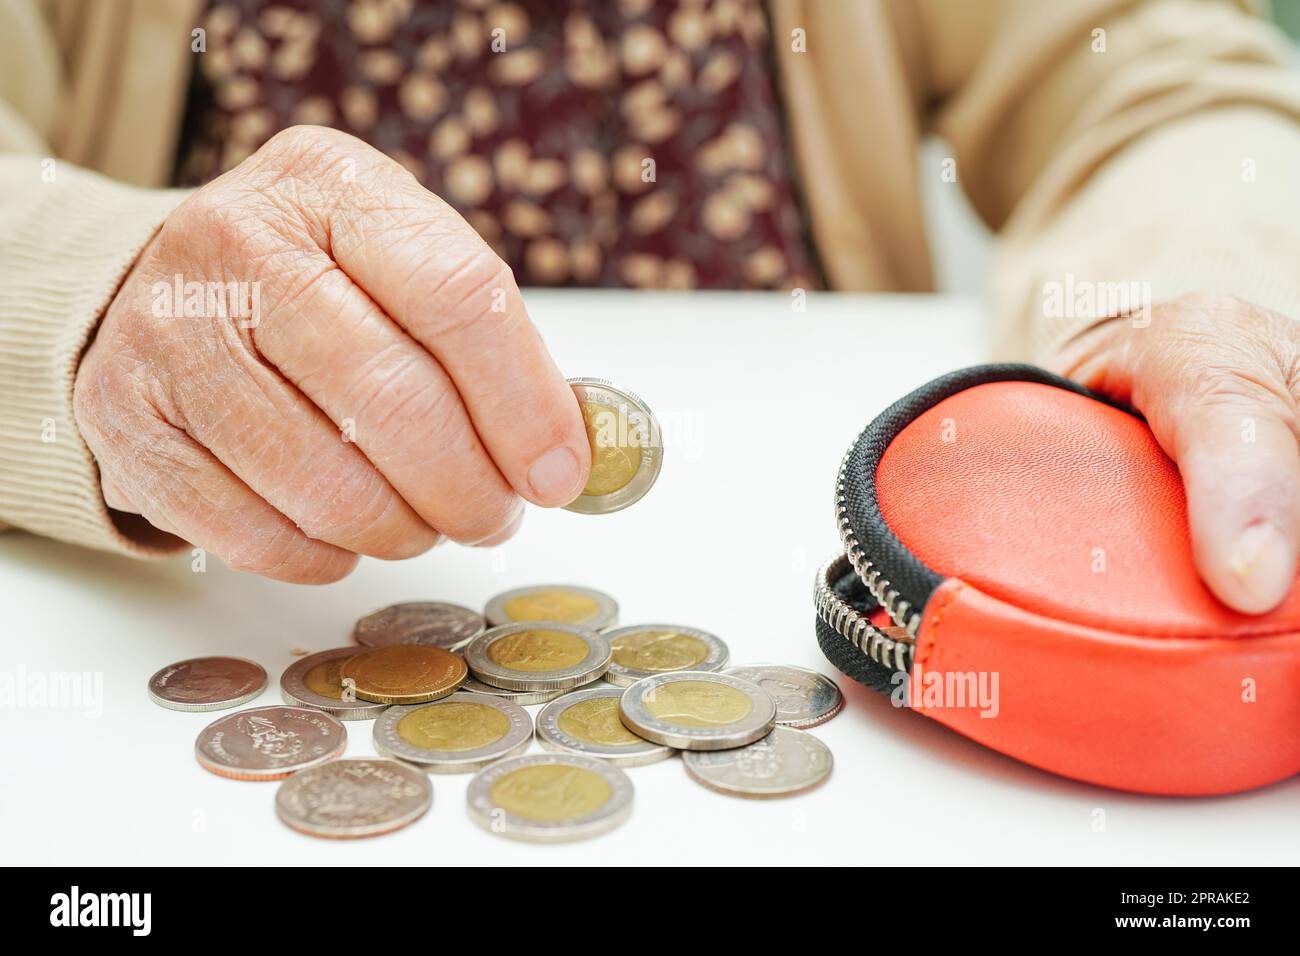 Ältere Frau im Ruhestand, die Münzen zählt, Geld zählt und sich um monatliche Ausgaben und die Zahlung von Behandlungsgebühren sorgt. Stockfoto